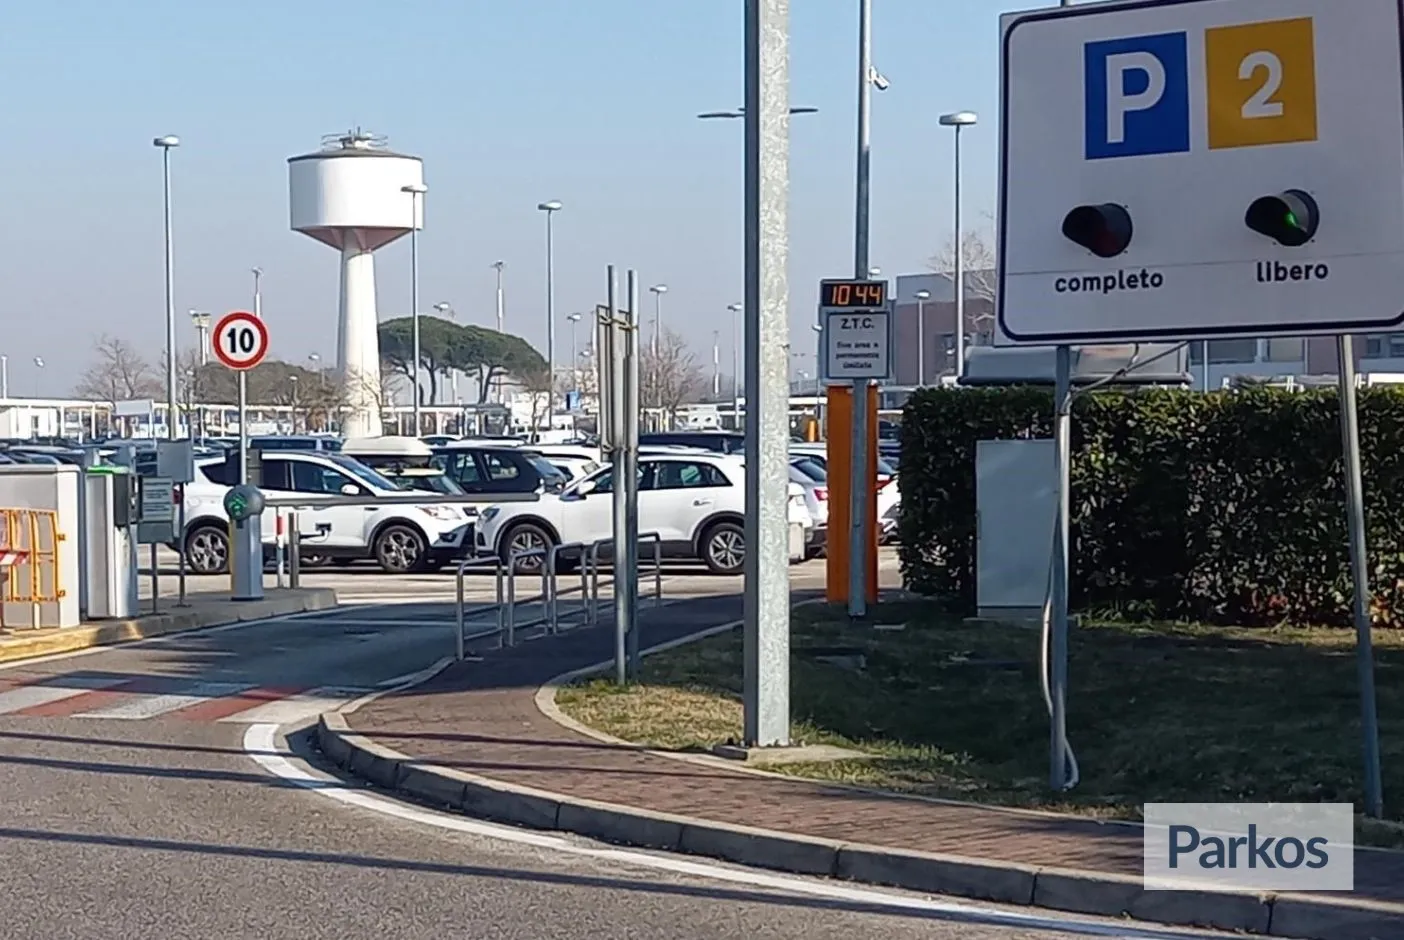 P2 Aeroporto di Venezia - Venice Airport Parking - picture 1